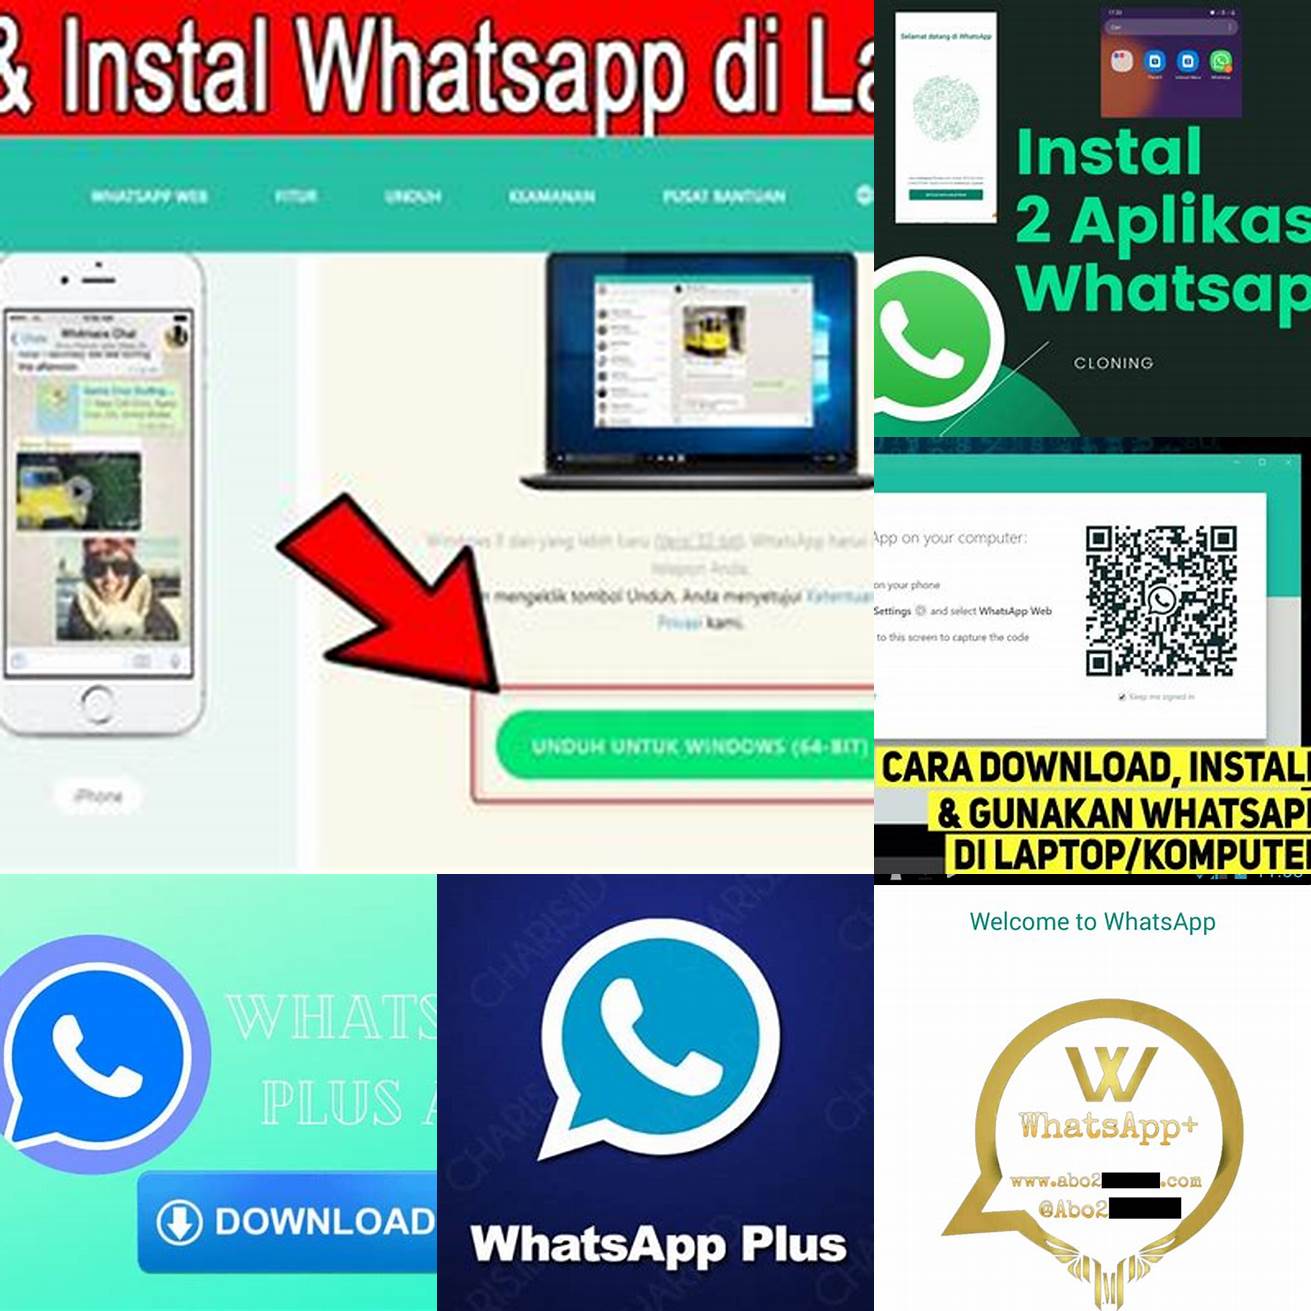 Buka file APK WhatsApp Plus yang sudah diunduh dan klik Instal